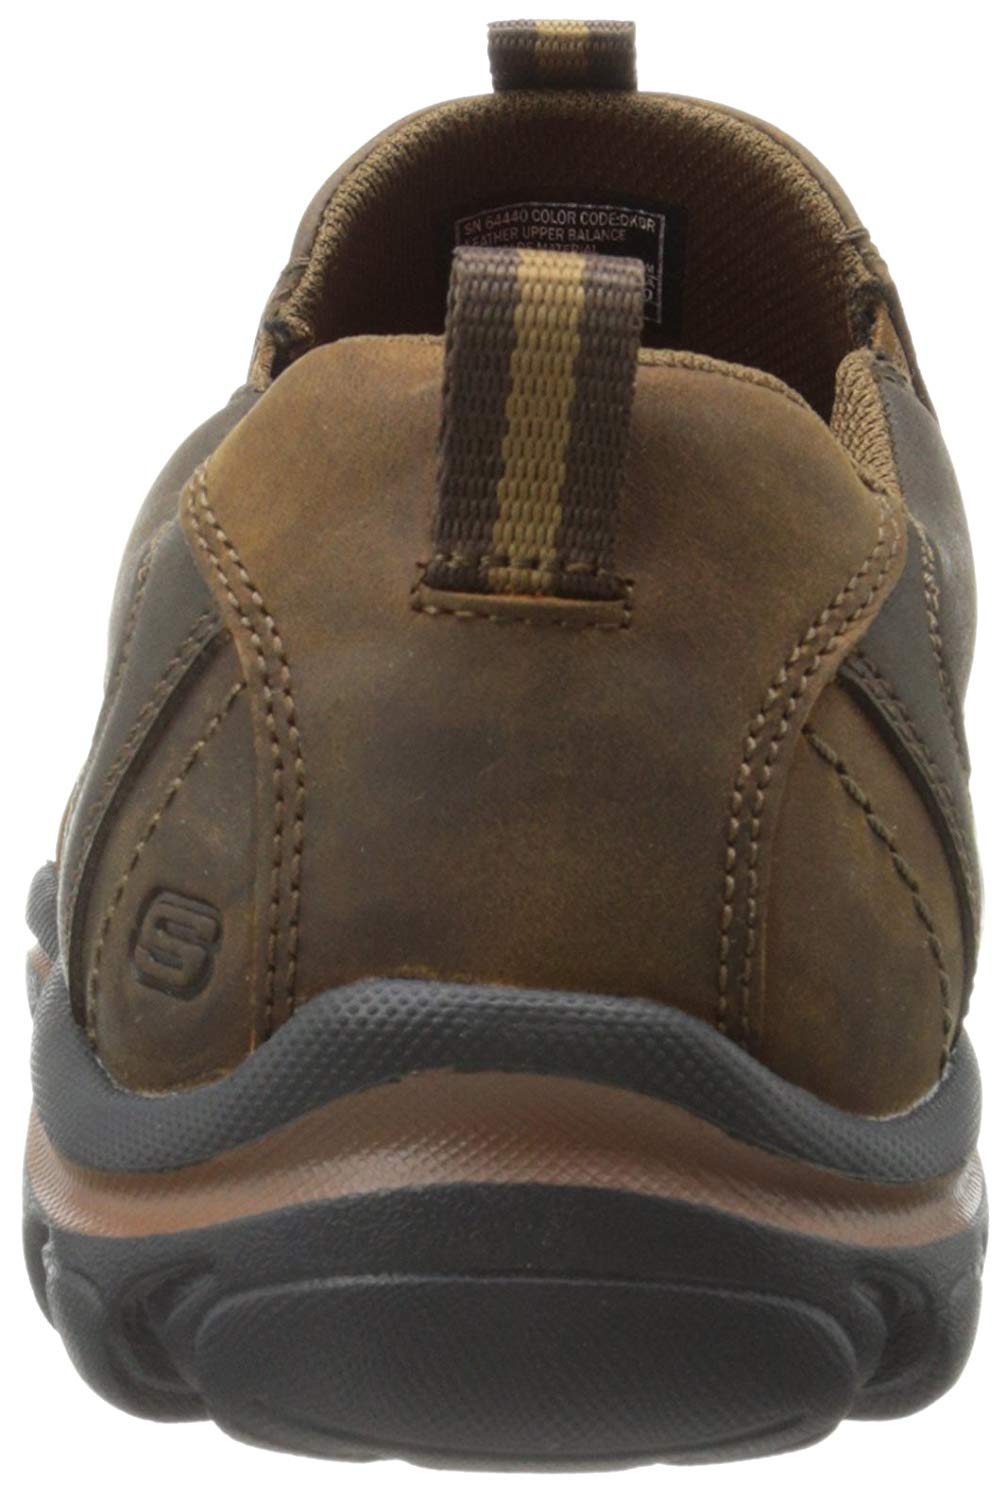 Skechers Men's Montz Devent Slip-On Loafer, Dark Brown, Size 13.0 eyTM ...